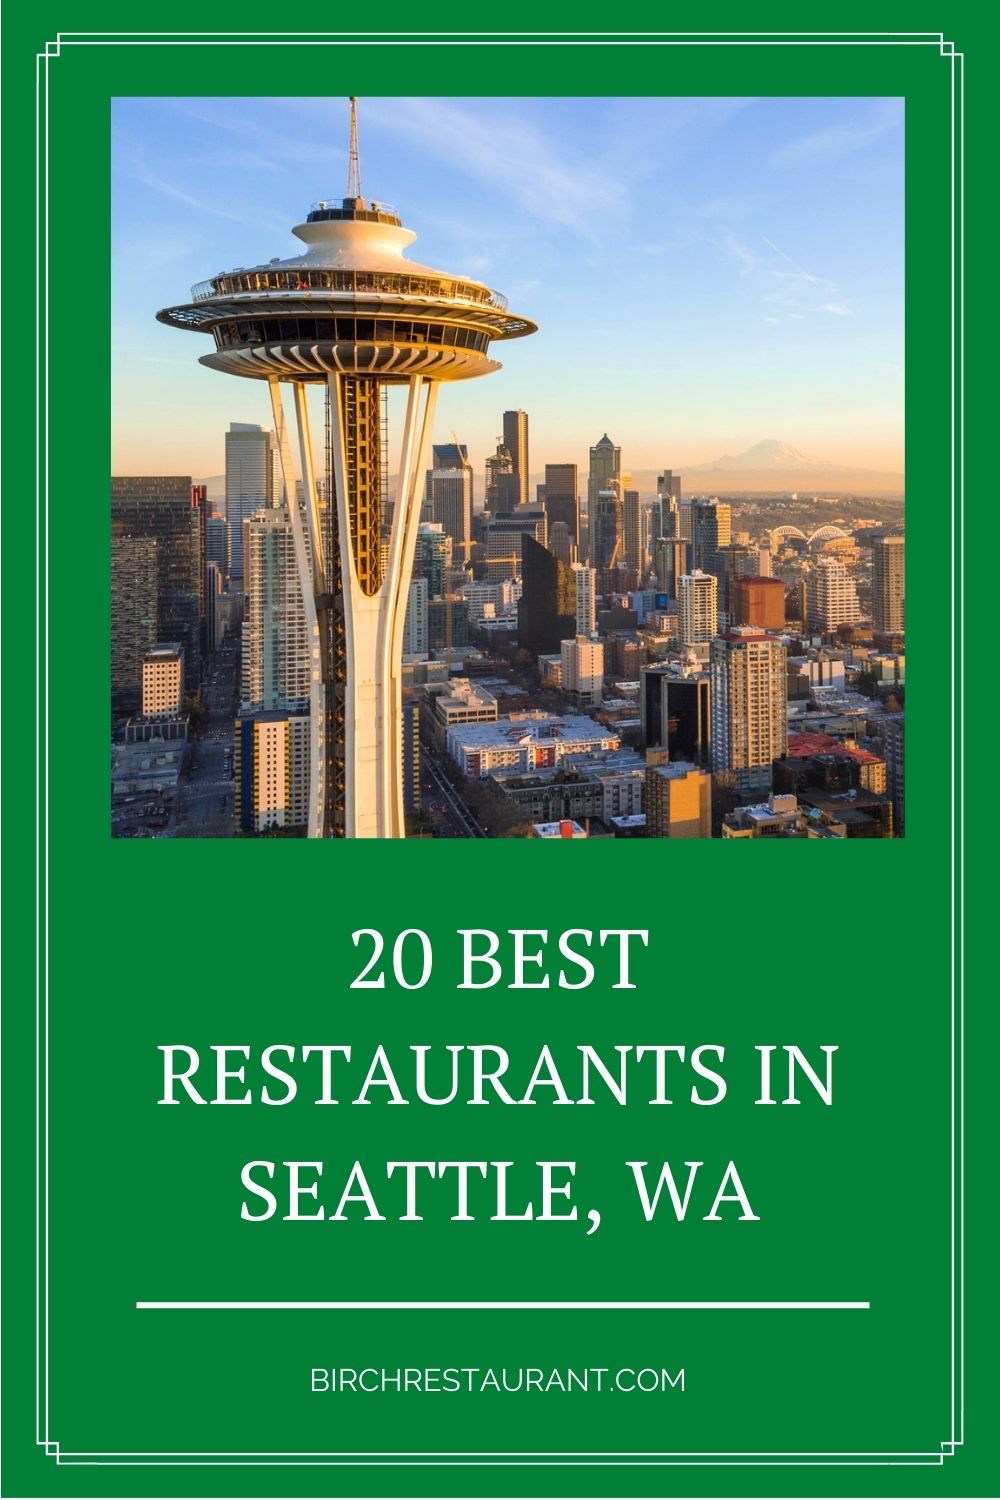 Best Restaurants in Seattle